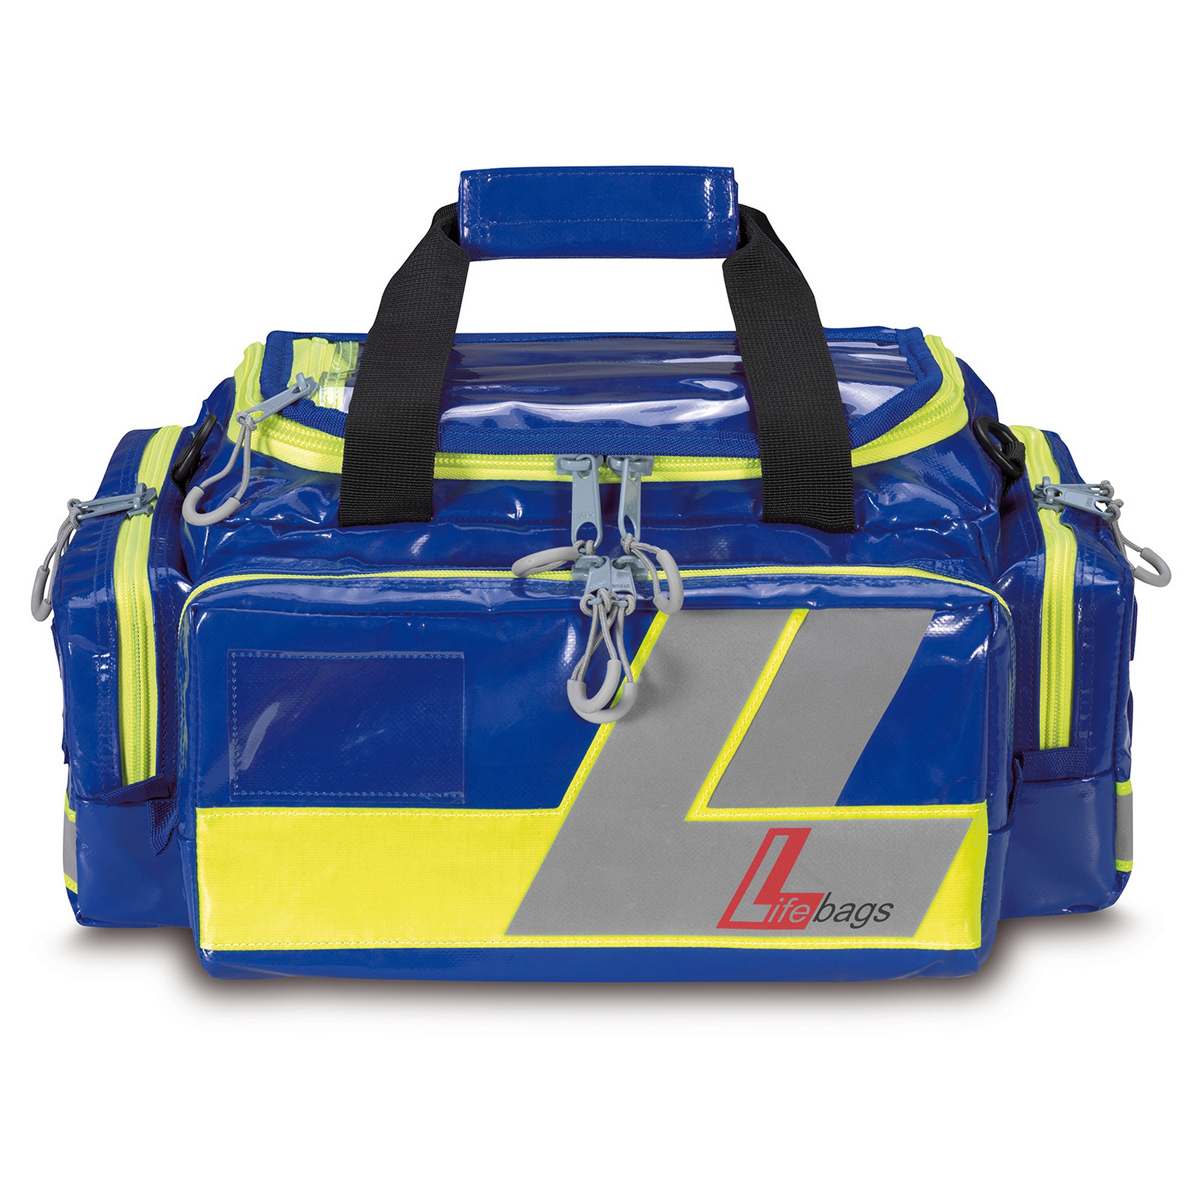 Lifebags Notfalltasche S - blau